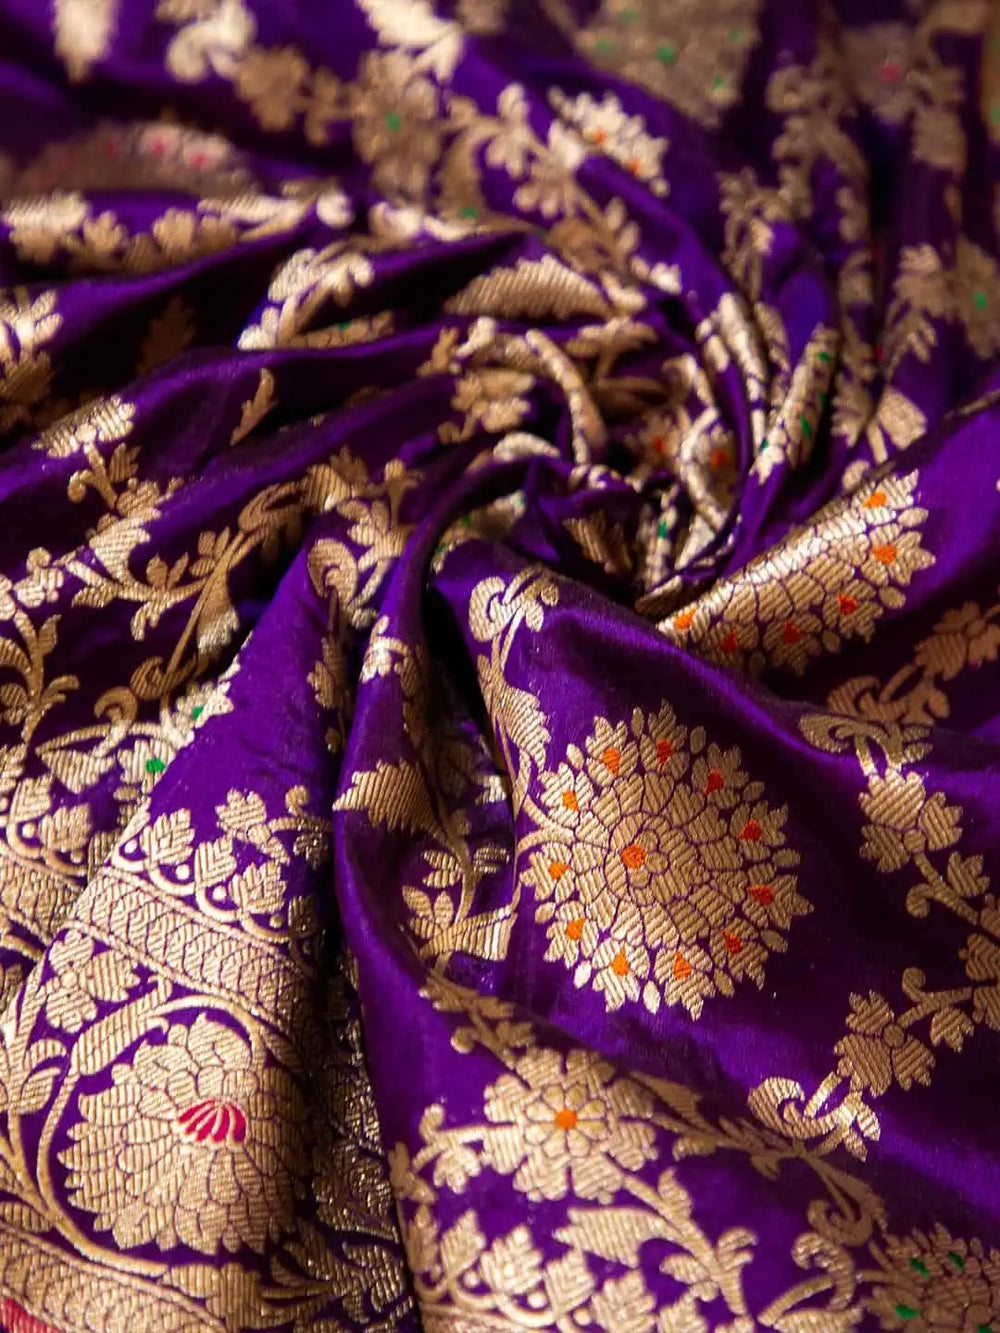 Handwoven Violet Banarasi Katan Silk Saree